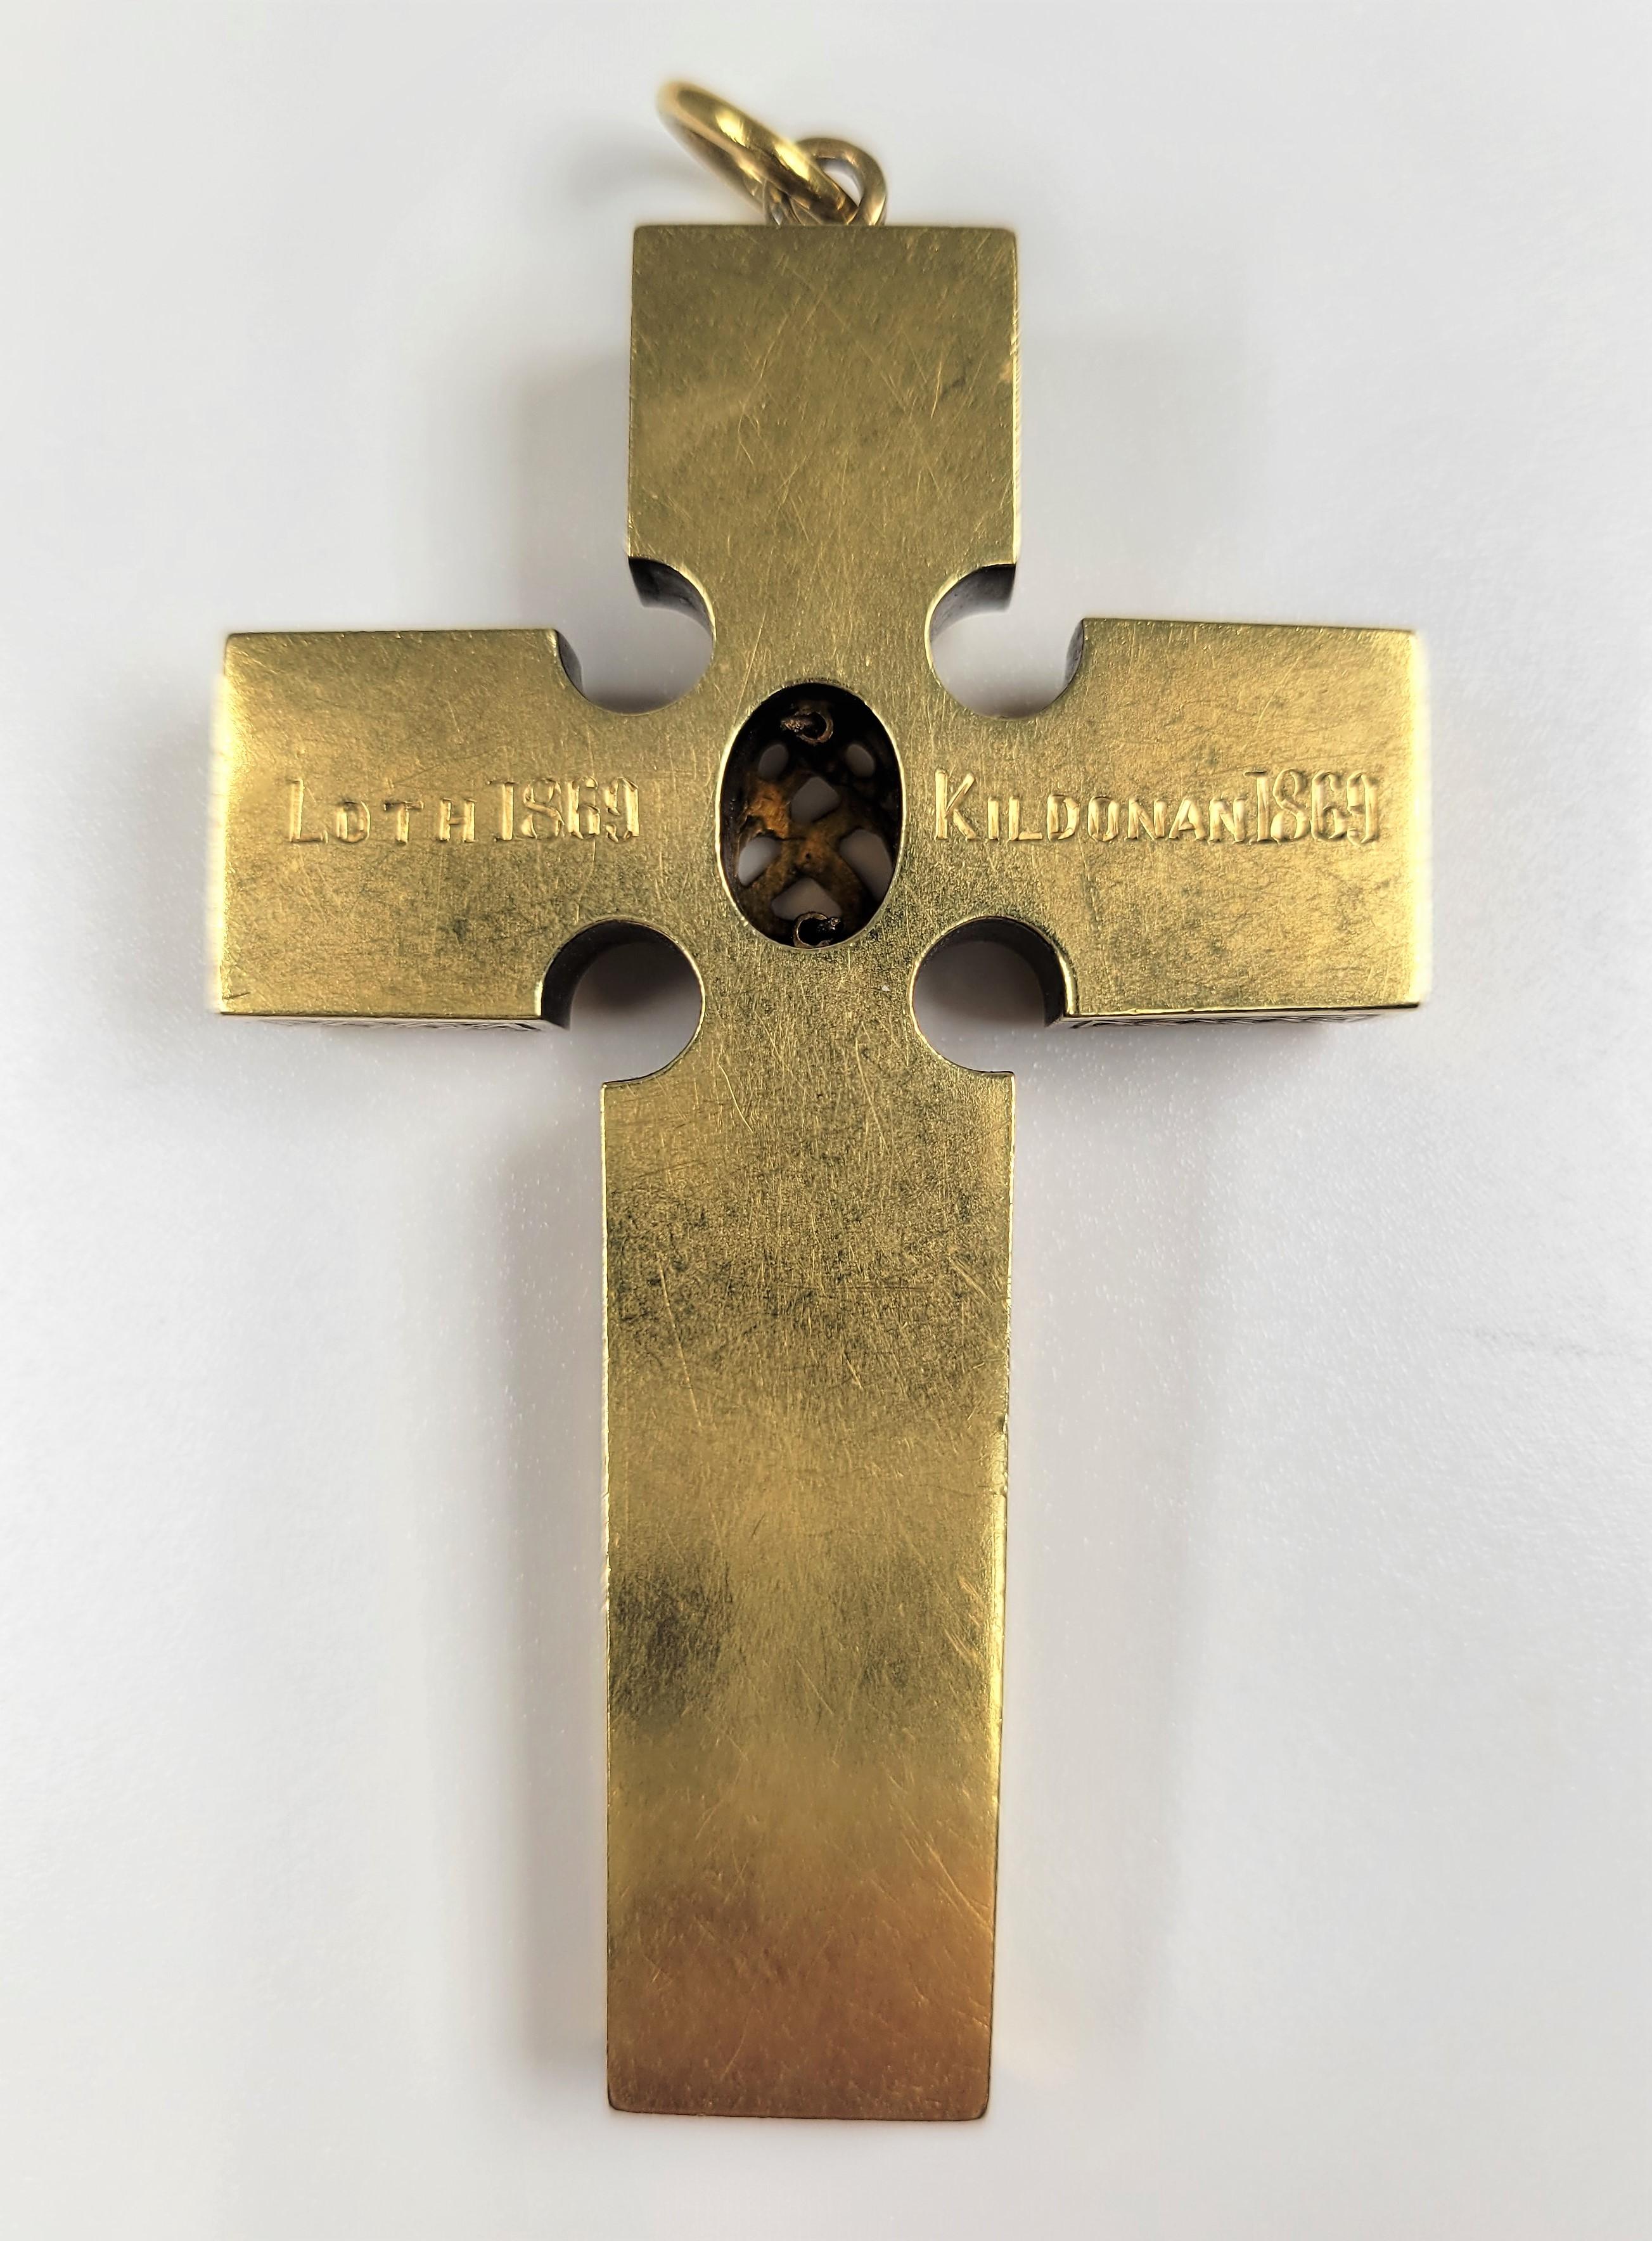 1869 Scottish Cross in Original Case In Good Condition For Sale In Dallas, TX